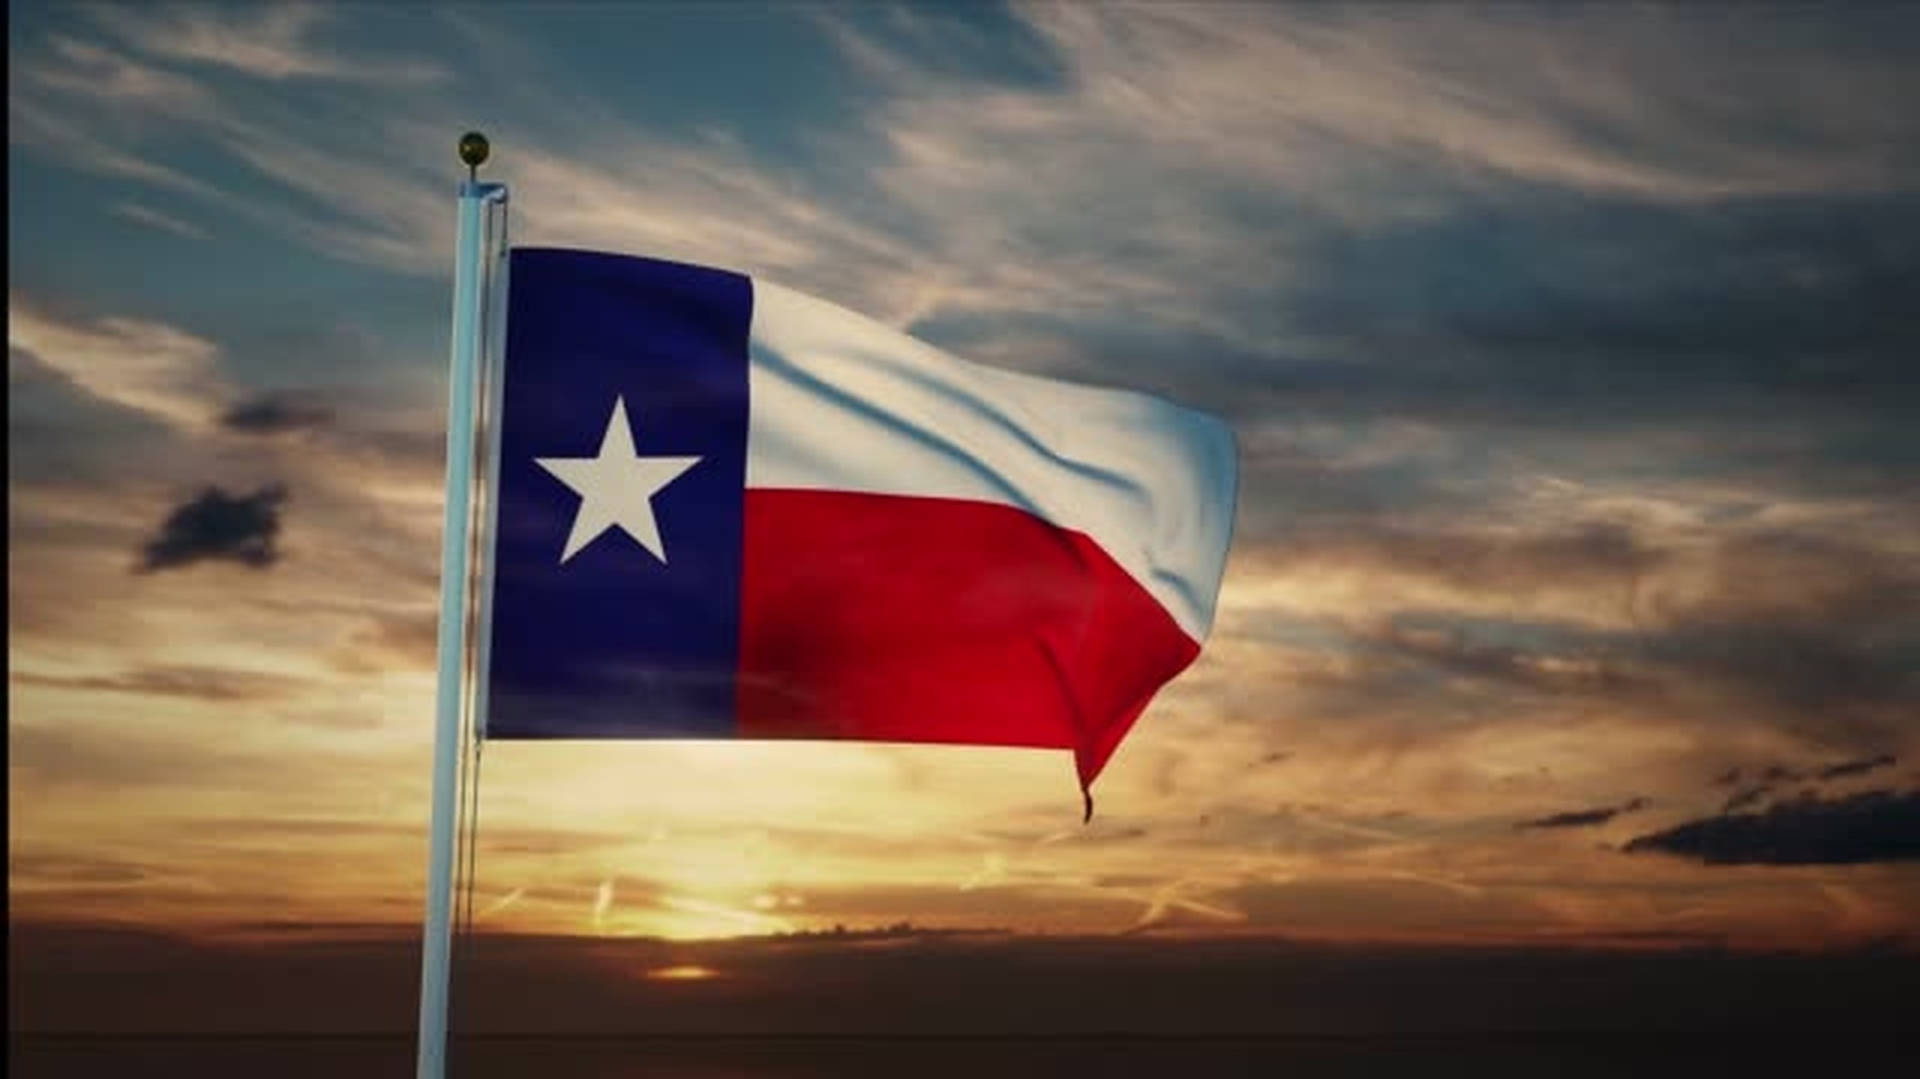 Mesmerizing Texas Flag Wallpaper